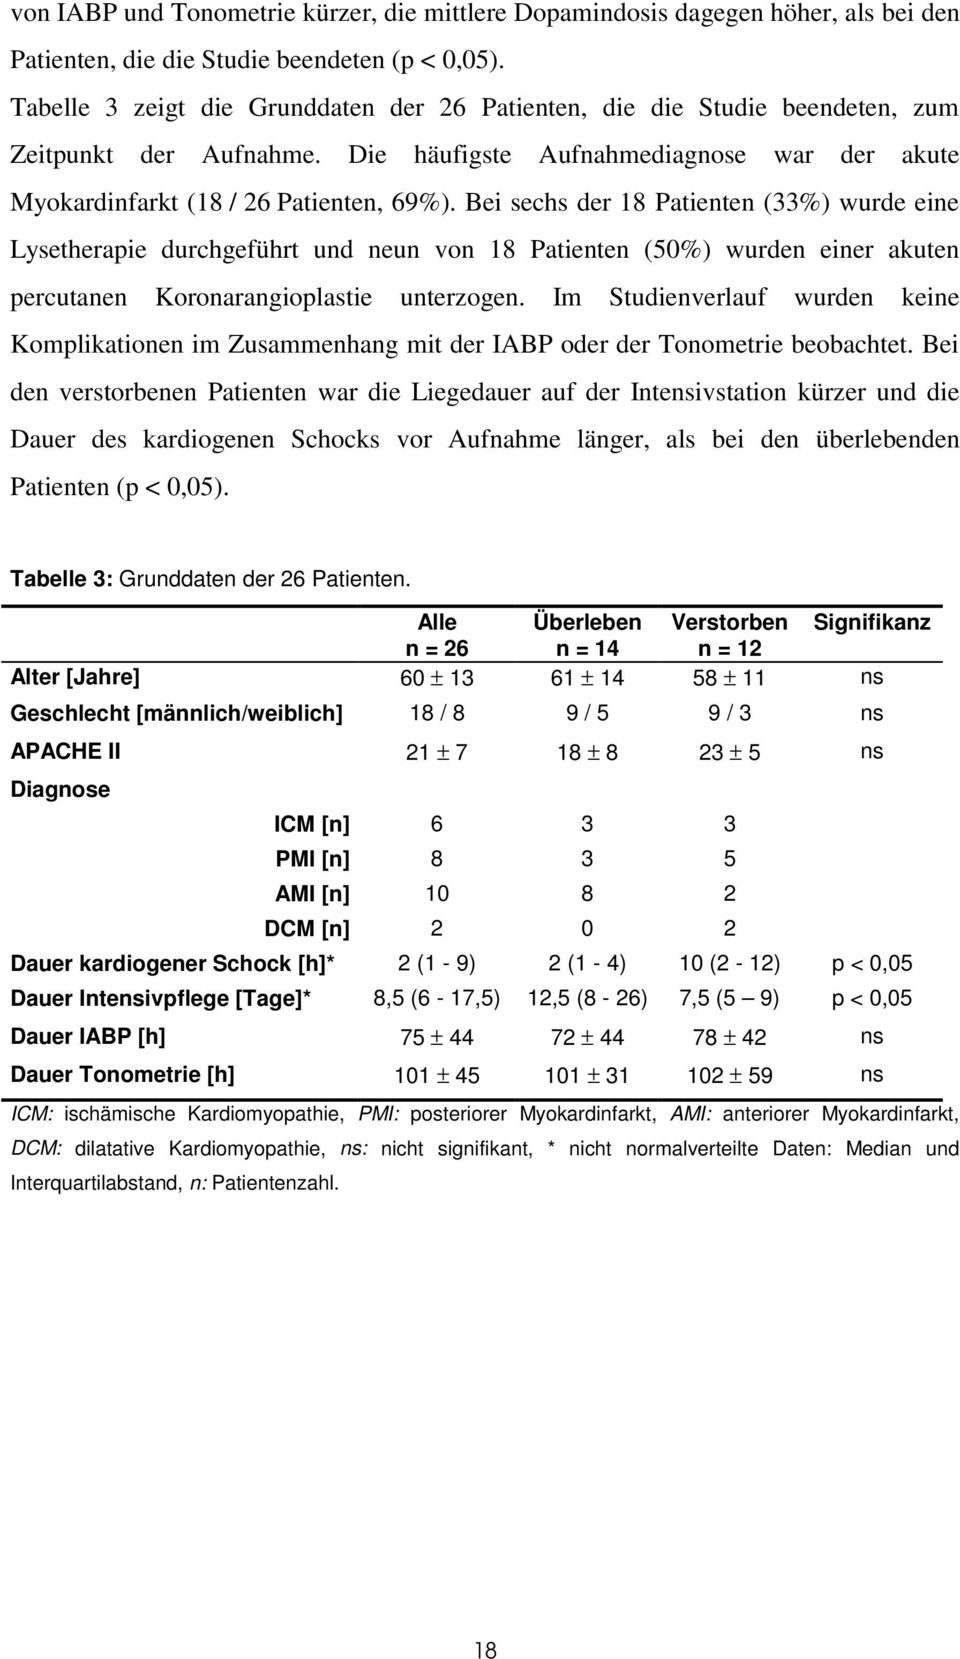 Bei sechs der 18 Patienten (33%) wurde eine Lysetherapie durchgeführt und neun von 18 Patienten (50%) wurden einer akuten percutanen Koronarangioplastie unterzogen.